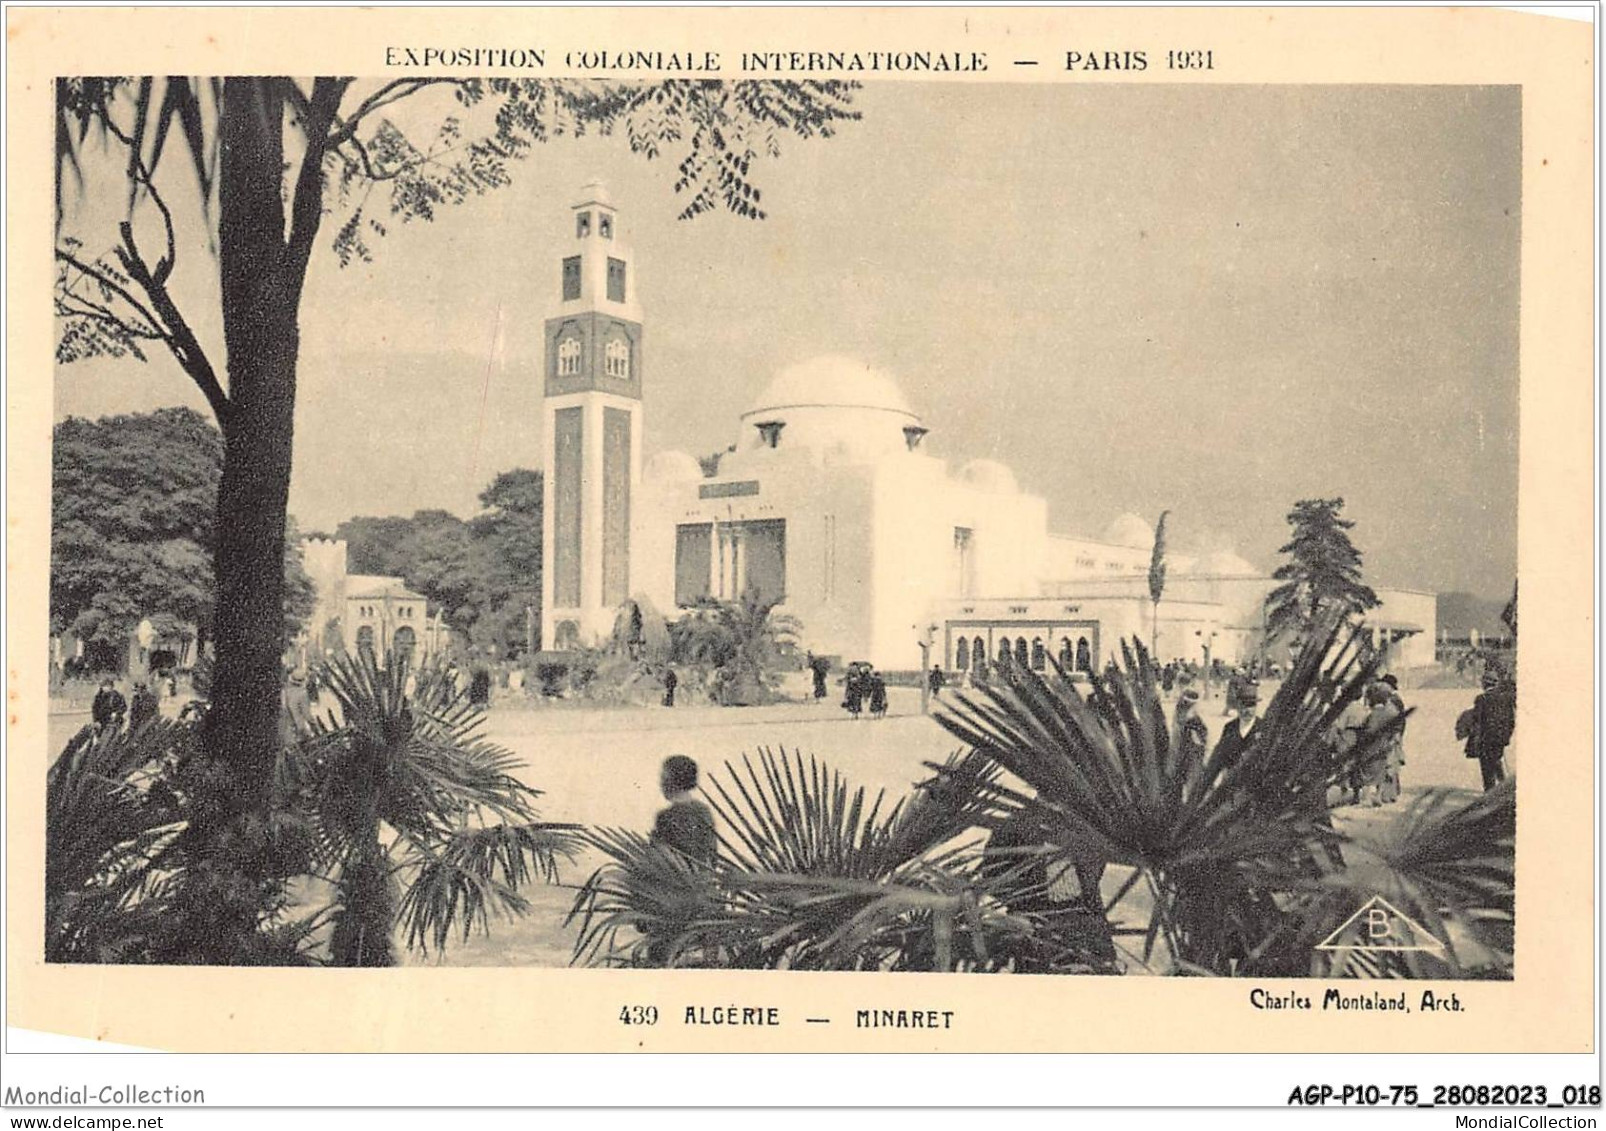 AGPP10-0820-75 - EXPOSITION - Algérie - Minaret  - Expositions